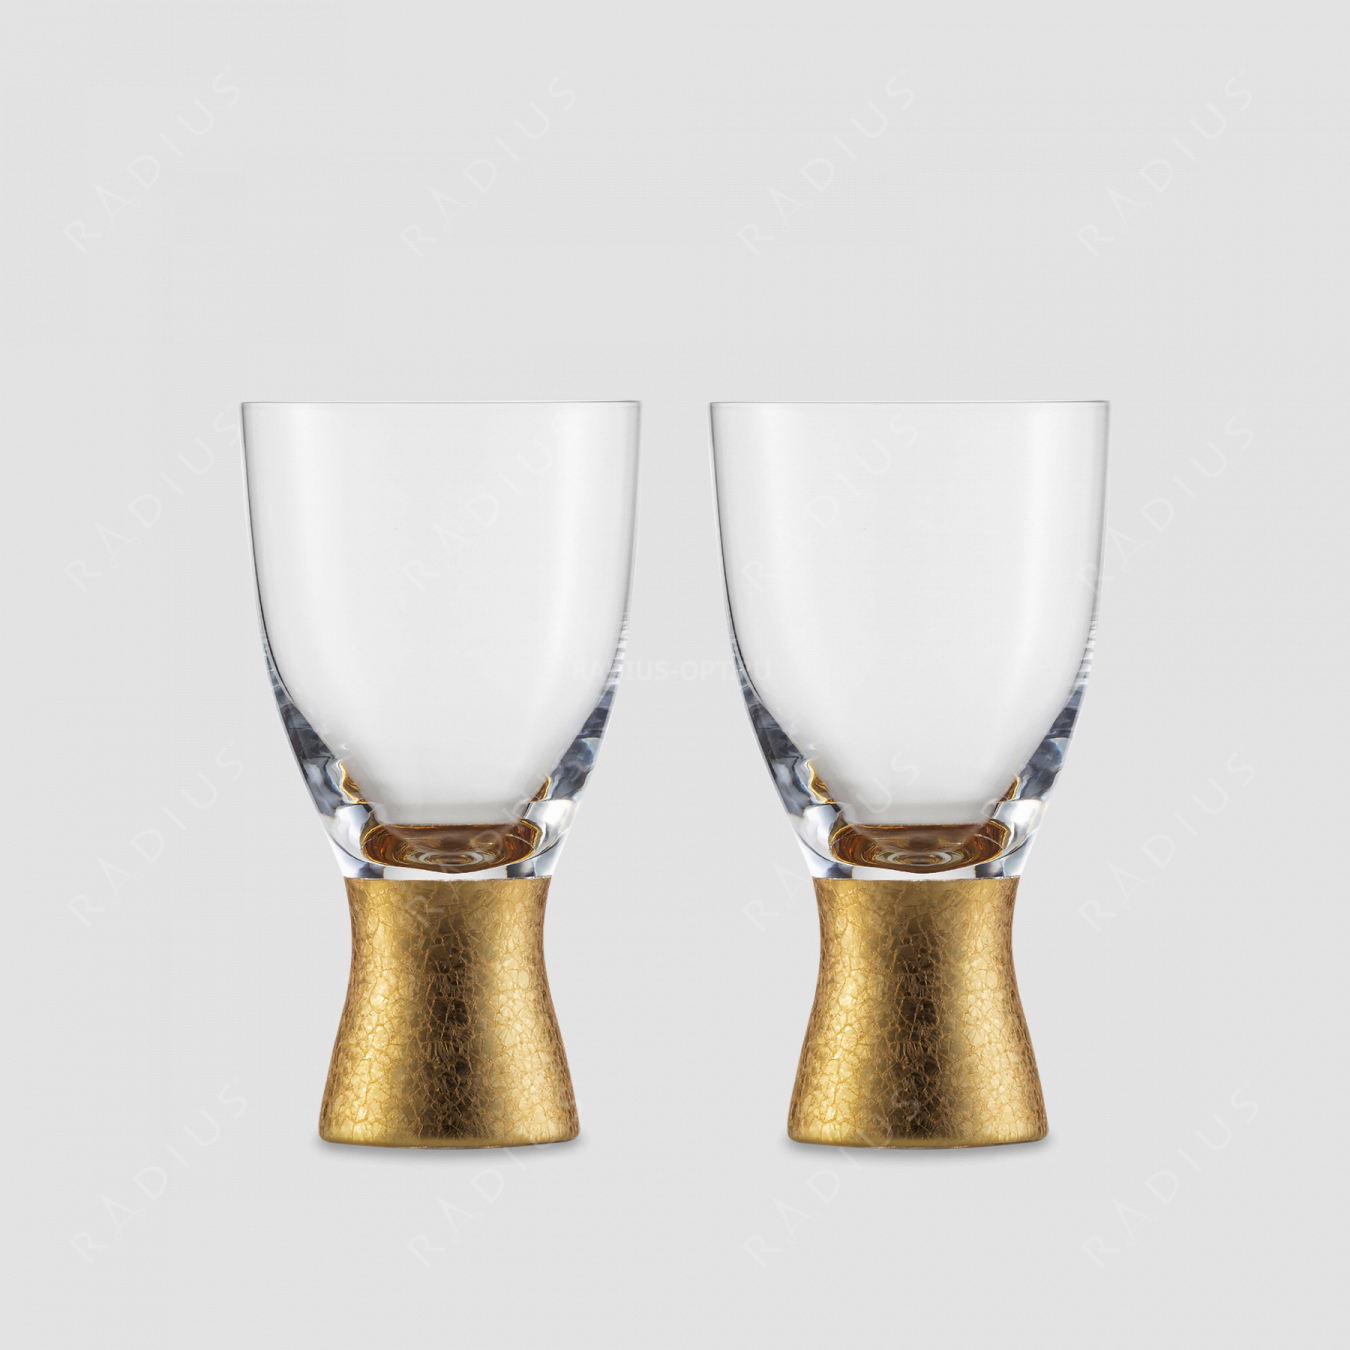 Набор из 2-х стаканов, объем: 320 мл, материал: бессвинцовый хрусталь, цвет: золотой, ручная работа, серия Gold Rush, EISCH, Германия